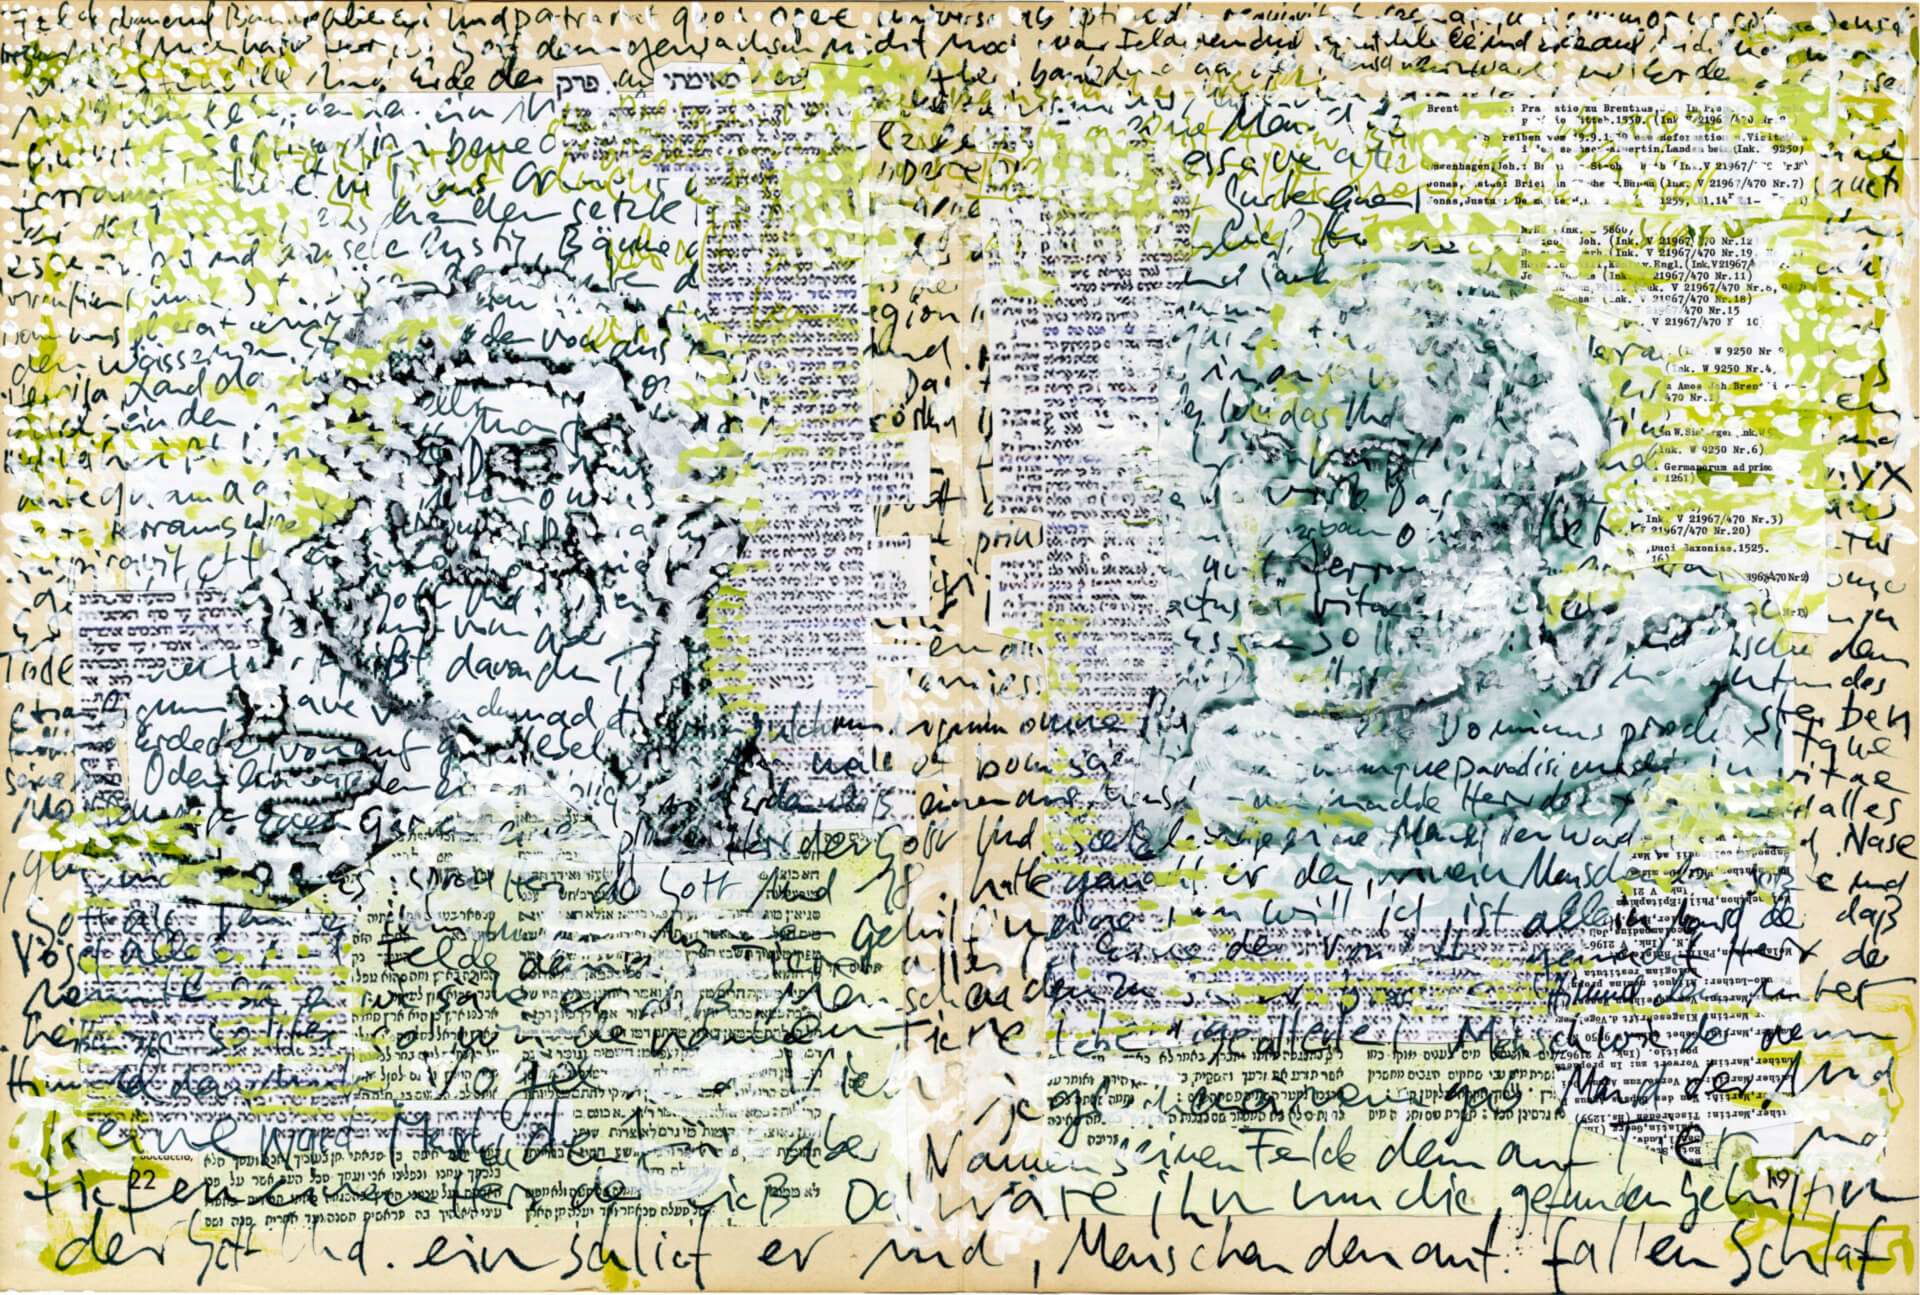 Raschi-Luther Augenhöhe, 2011, Bildbasis Doppelblatt aus Freskobildnisse der Frührenaissance, 36 x 54 cm, Roucka 57 (Standort: Jüdisches Museum Worms)